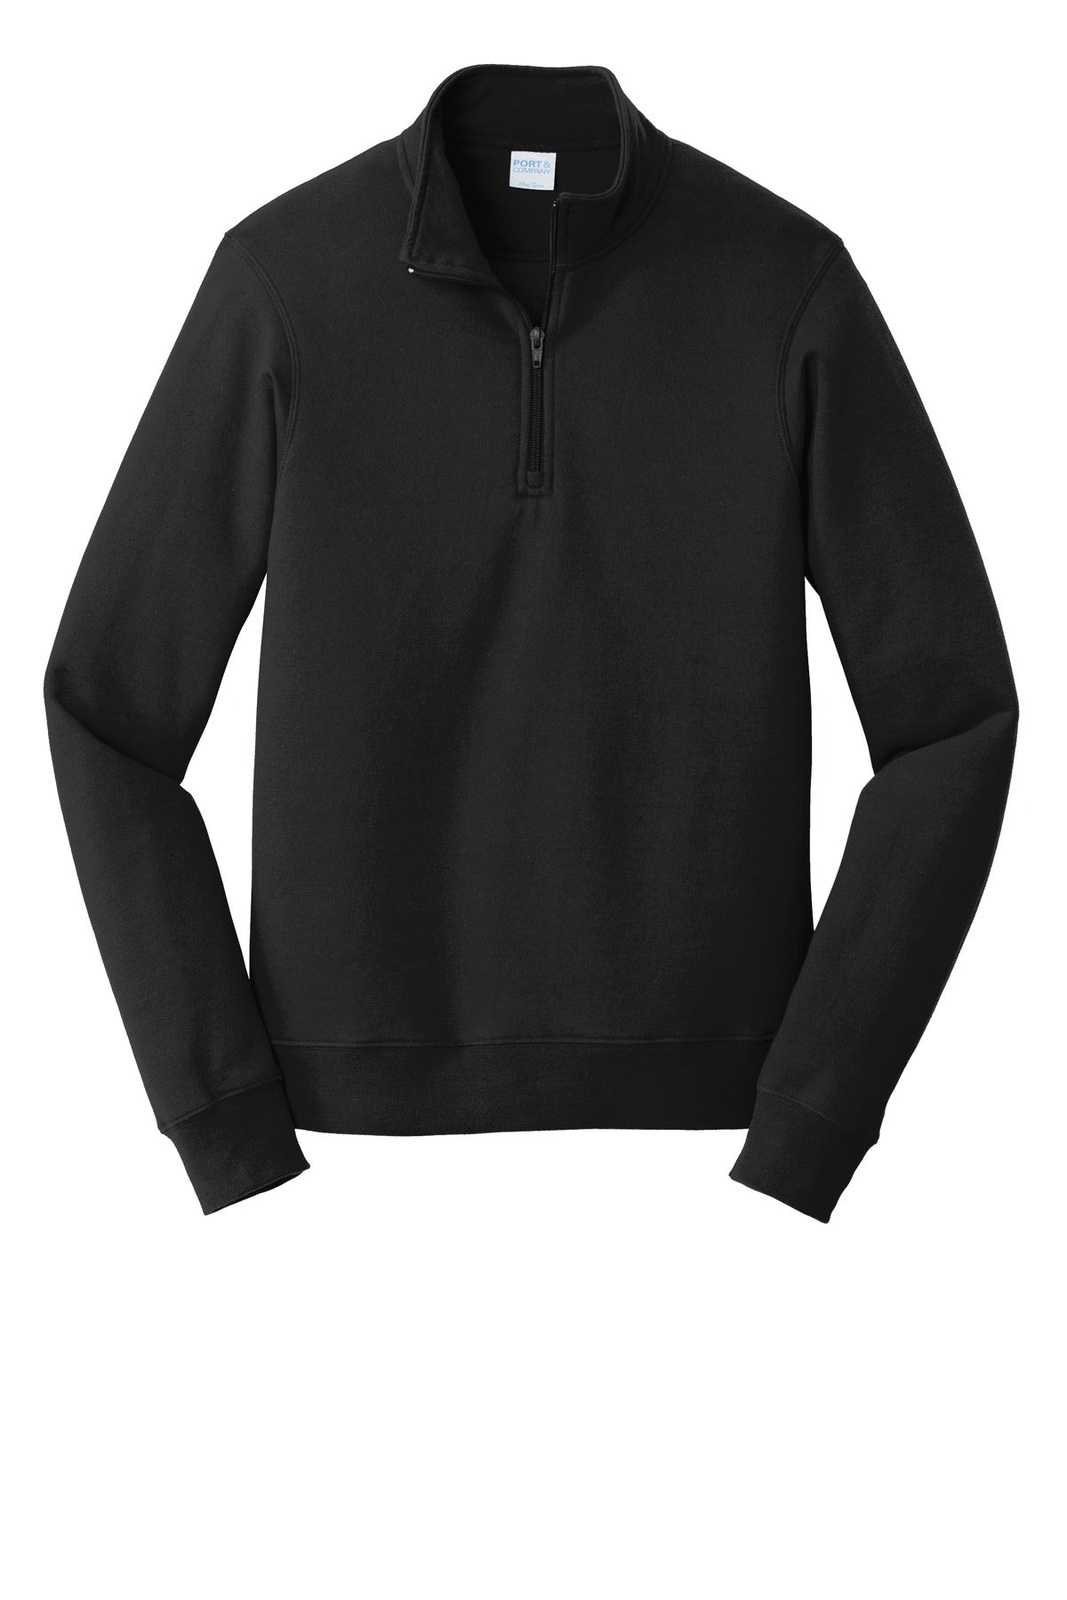 Port & Company PC850Q Fan Favorite Fleece 1/4-Zip Pullover Sweatshirt - Jet Black - HIT a Double - 1